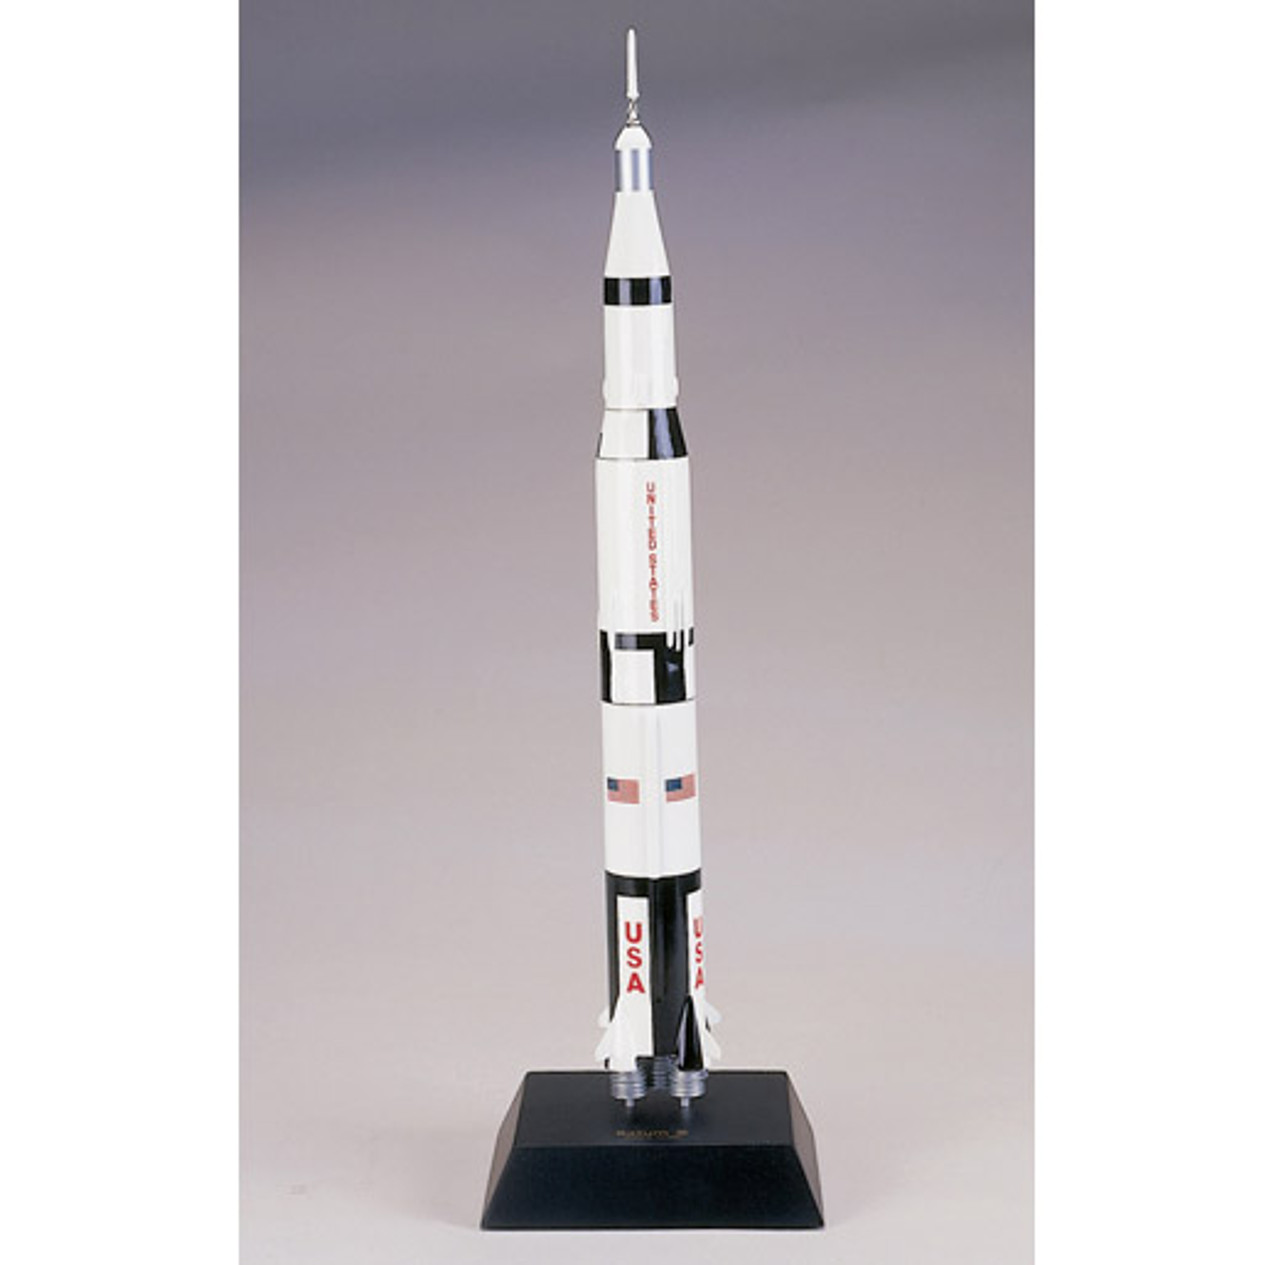 The Saturn V Rocket